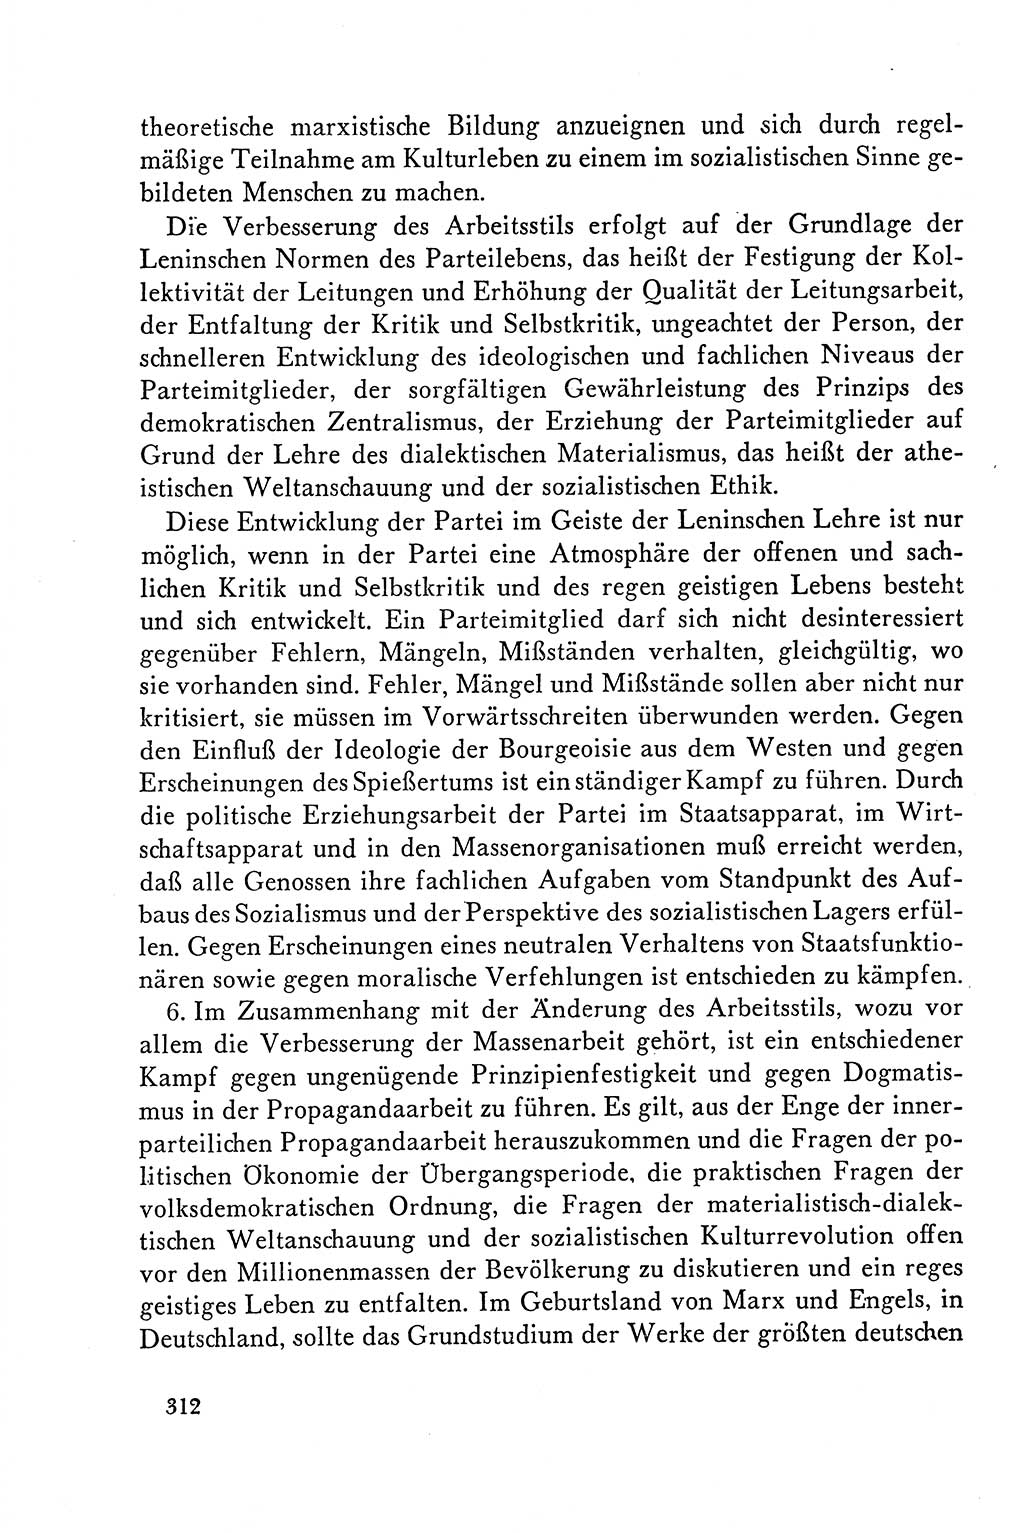 Dokumente der Sozialistischen Einheitspartei Deutschlands (SED) [Deutsche Demokratische Republik (DDR)] 1958-1959, Seite 312 (Dok. SED DDR 1958-1959, S. 312)